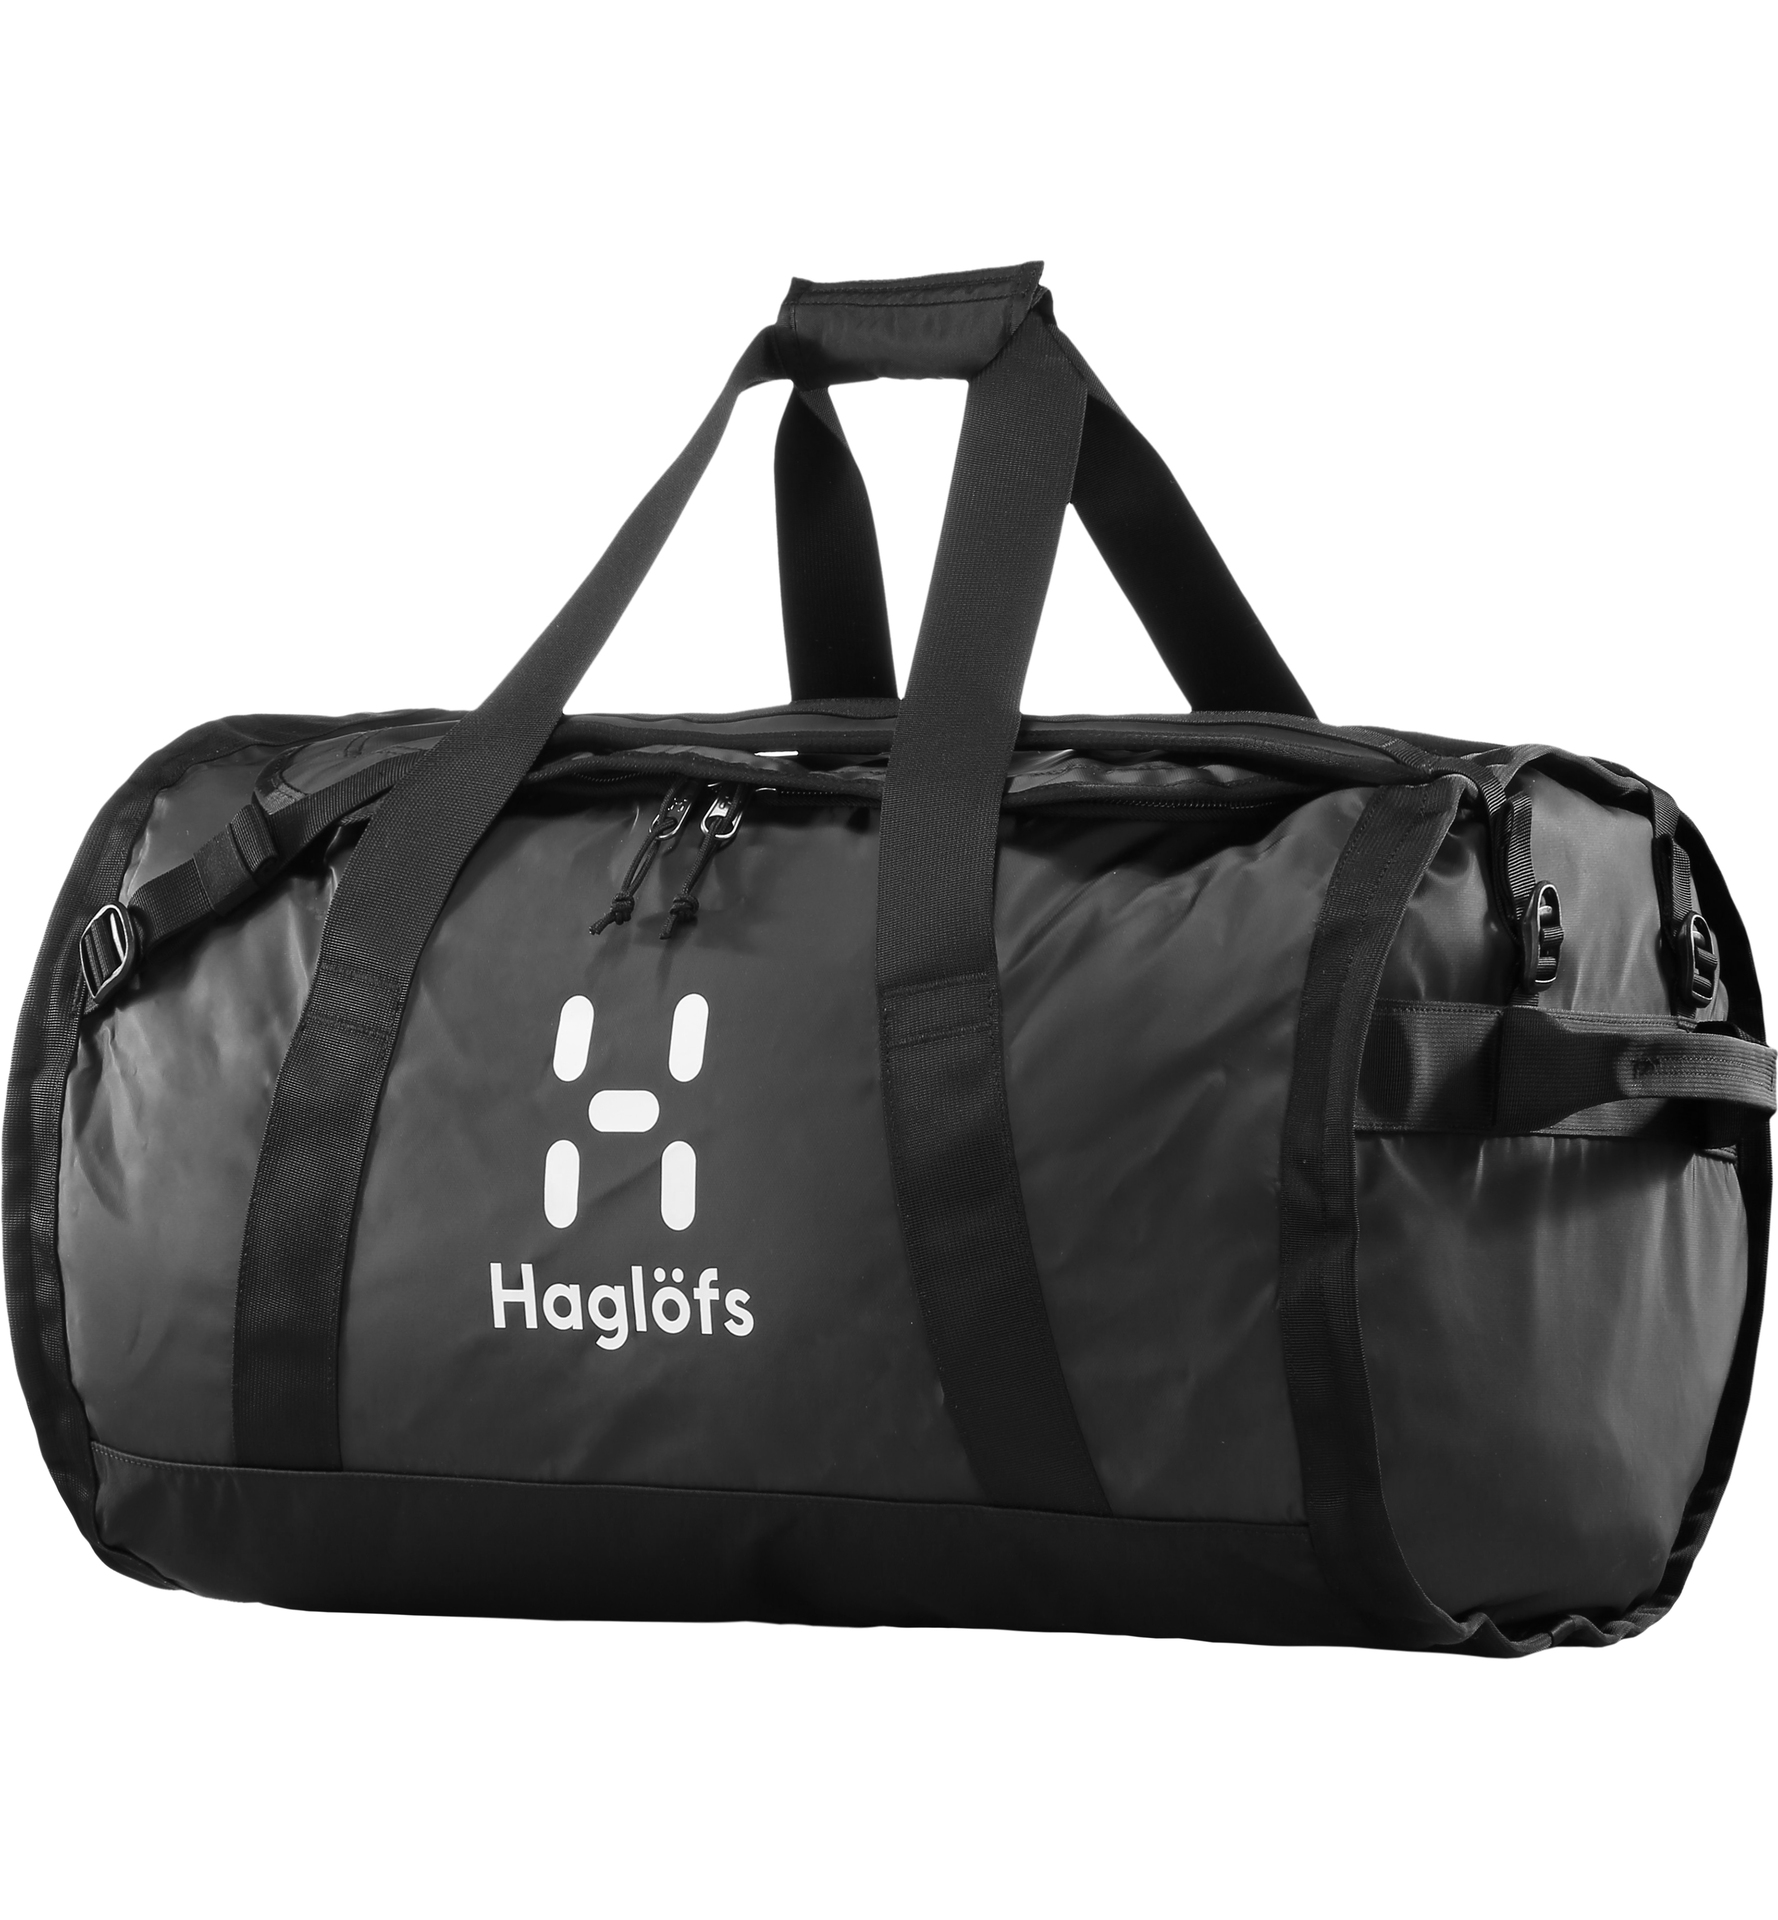 Sports bags & duffel bags | Haglöfs